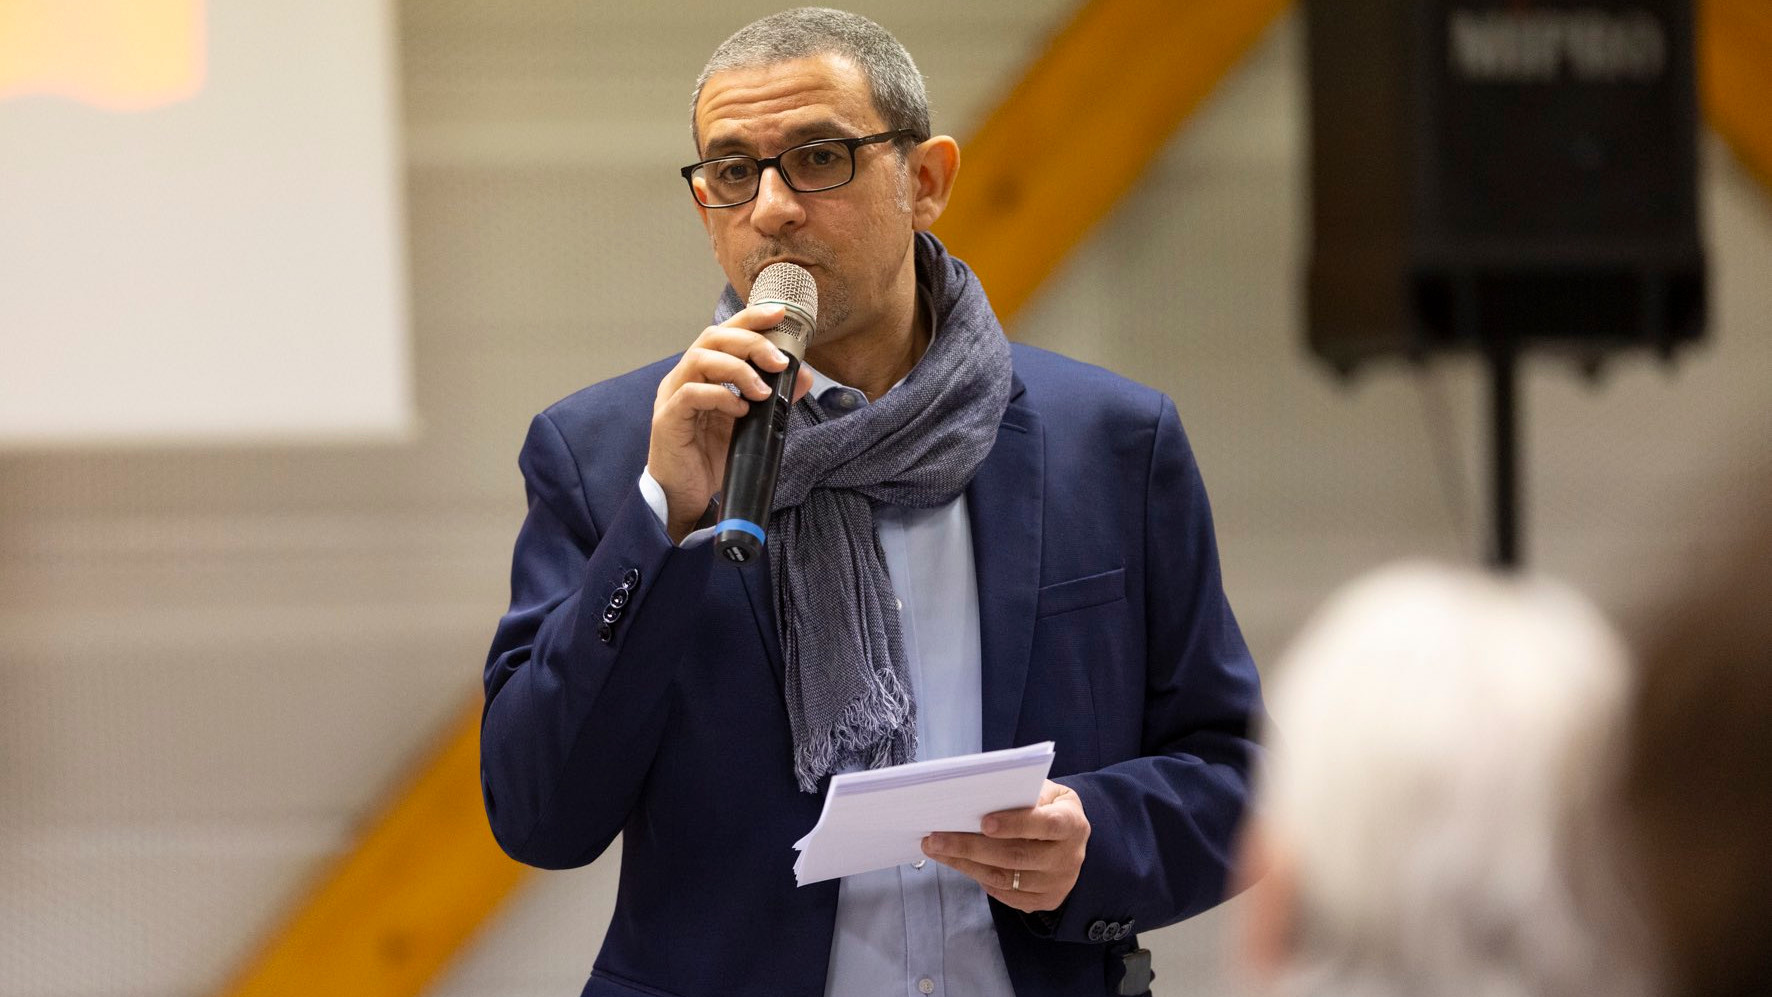 Législatives 2022 : Fabien Jouvé conteste l’élection de Monique Iborra dans la 6e circonscription de Haute-Garonne